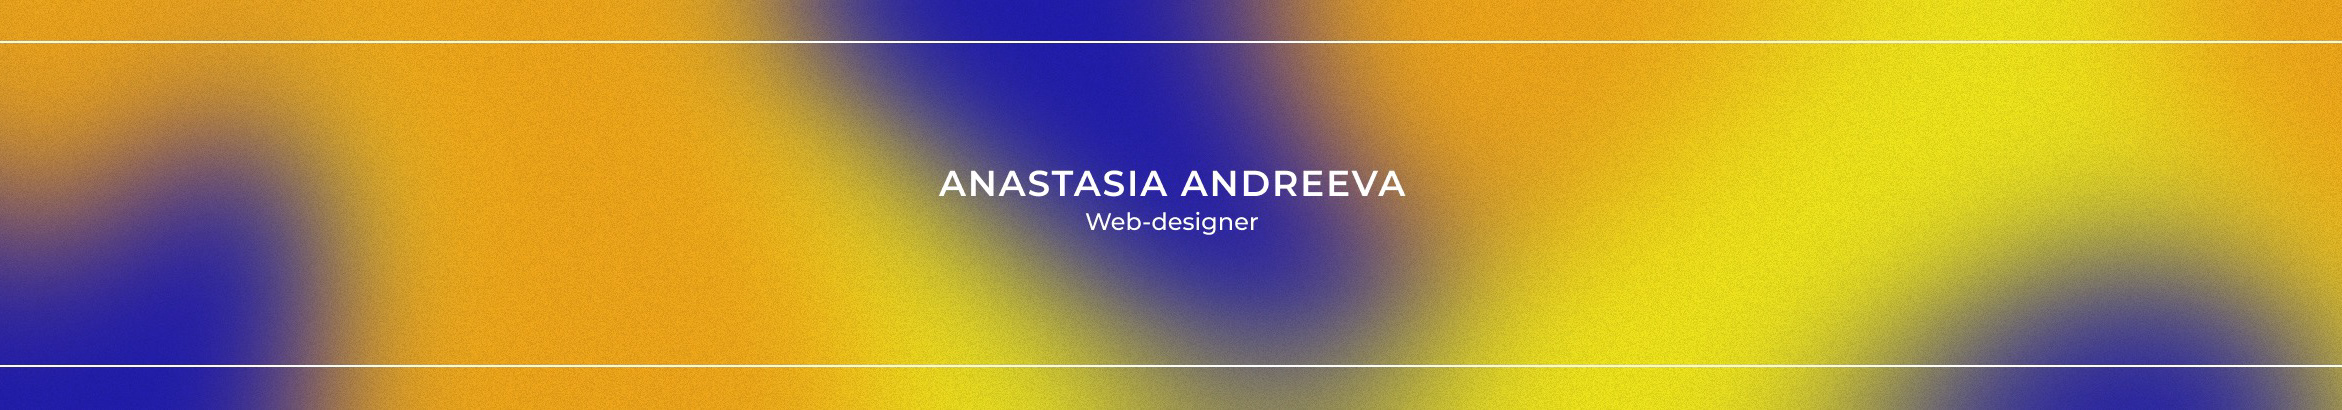 Baner profilu użytkownika Anastasia Andreeva